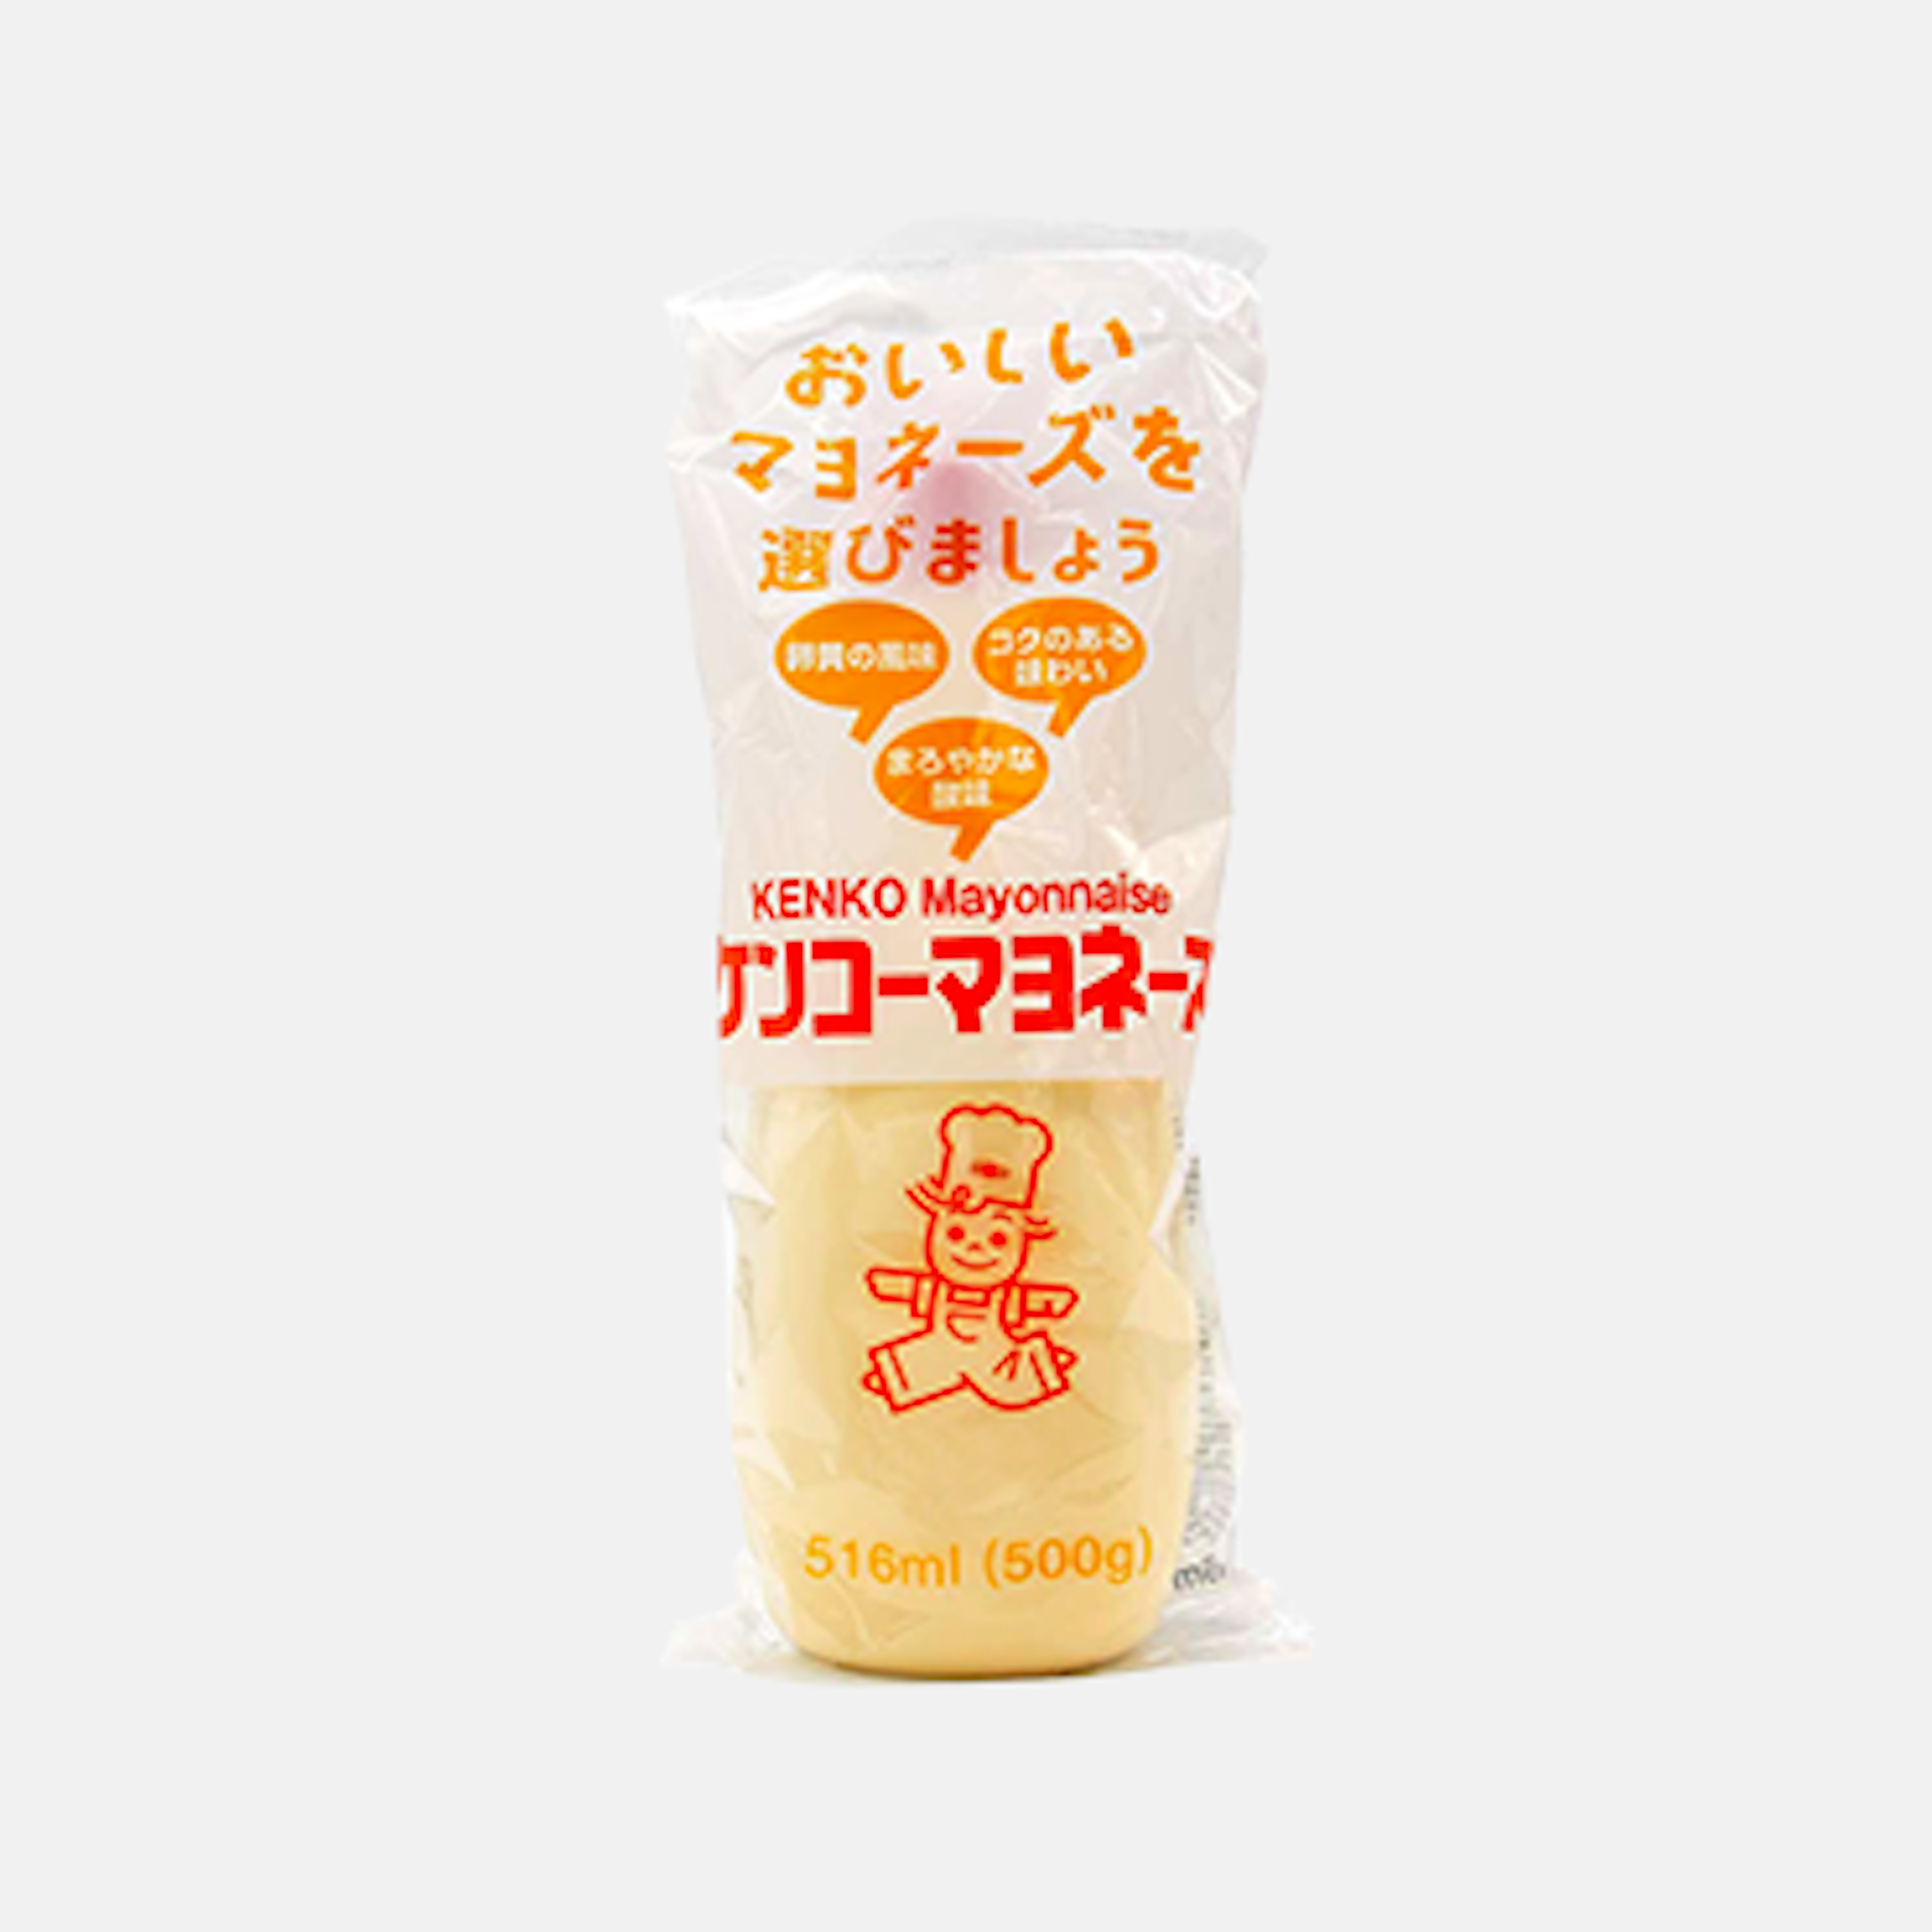 Verpackung der Kenko Mayonnaise 500 ml – zeigt die stilvolle und informative Verpackung.